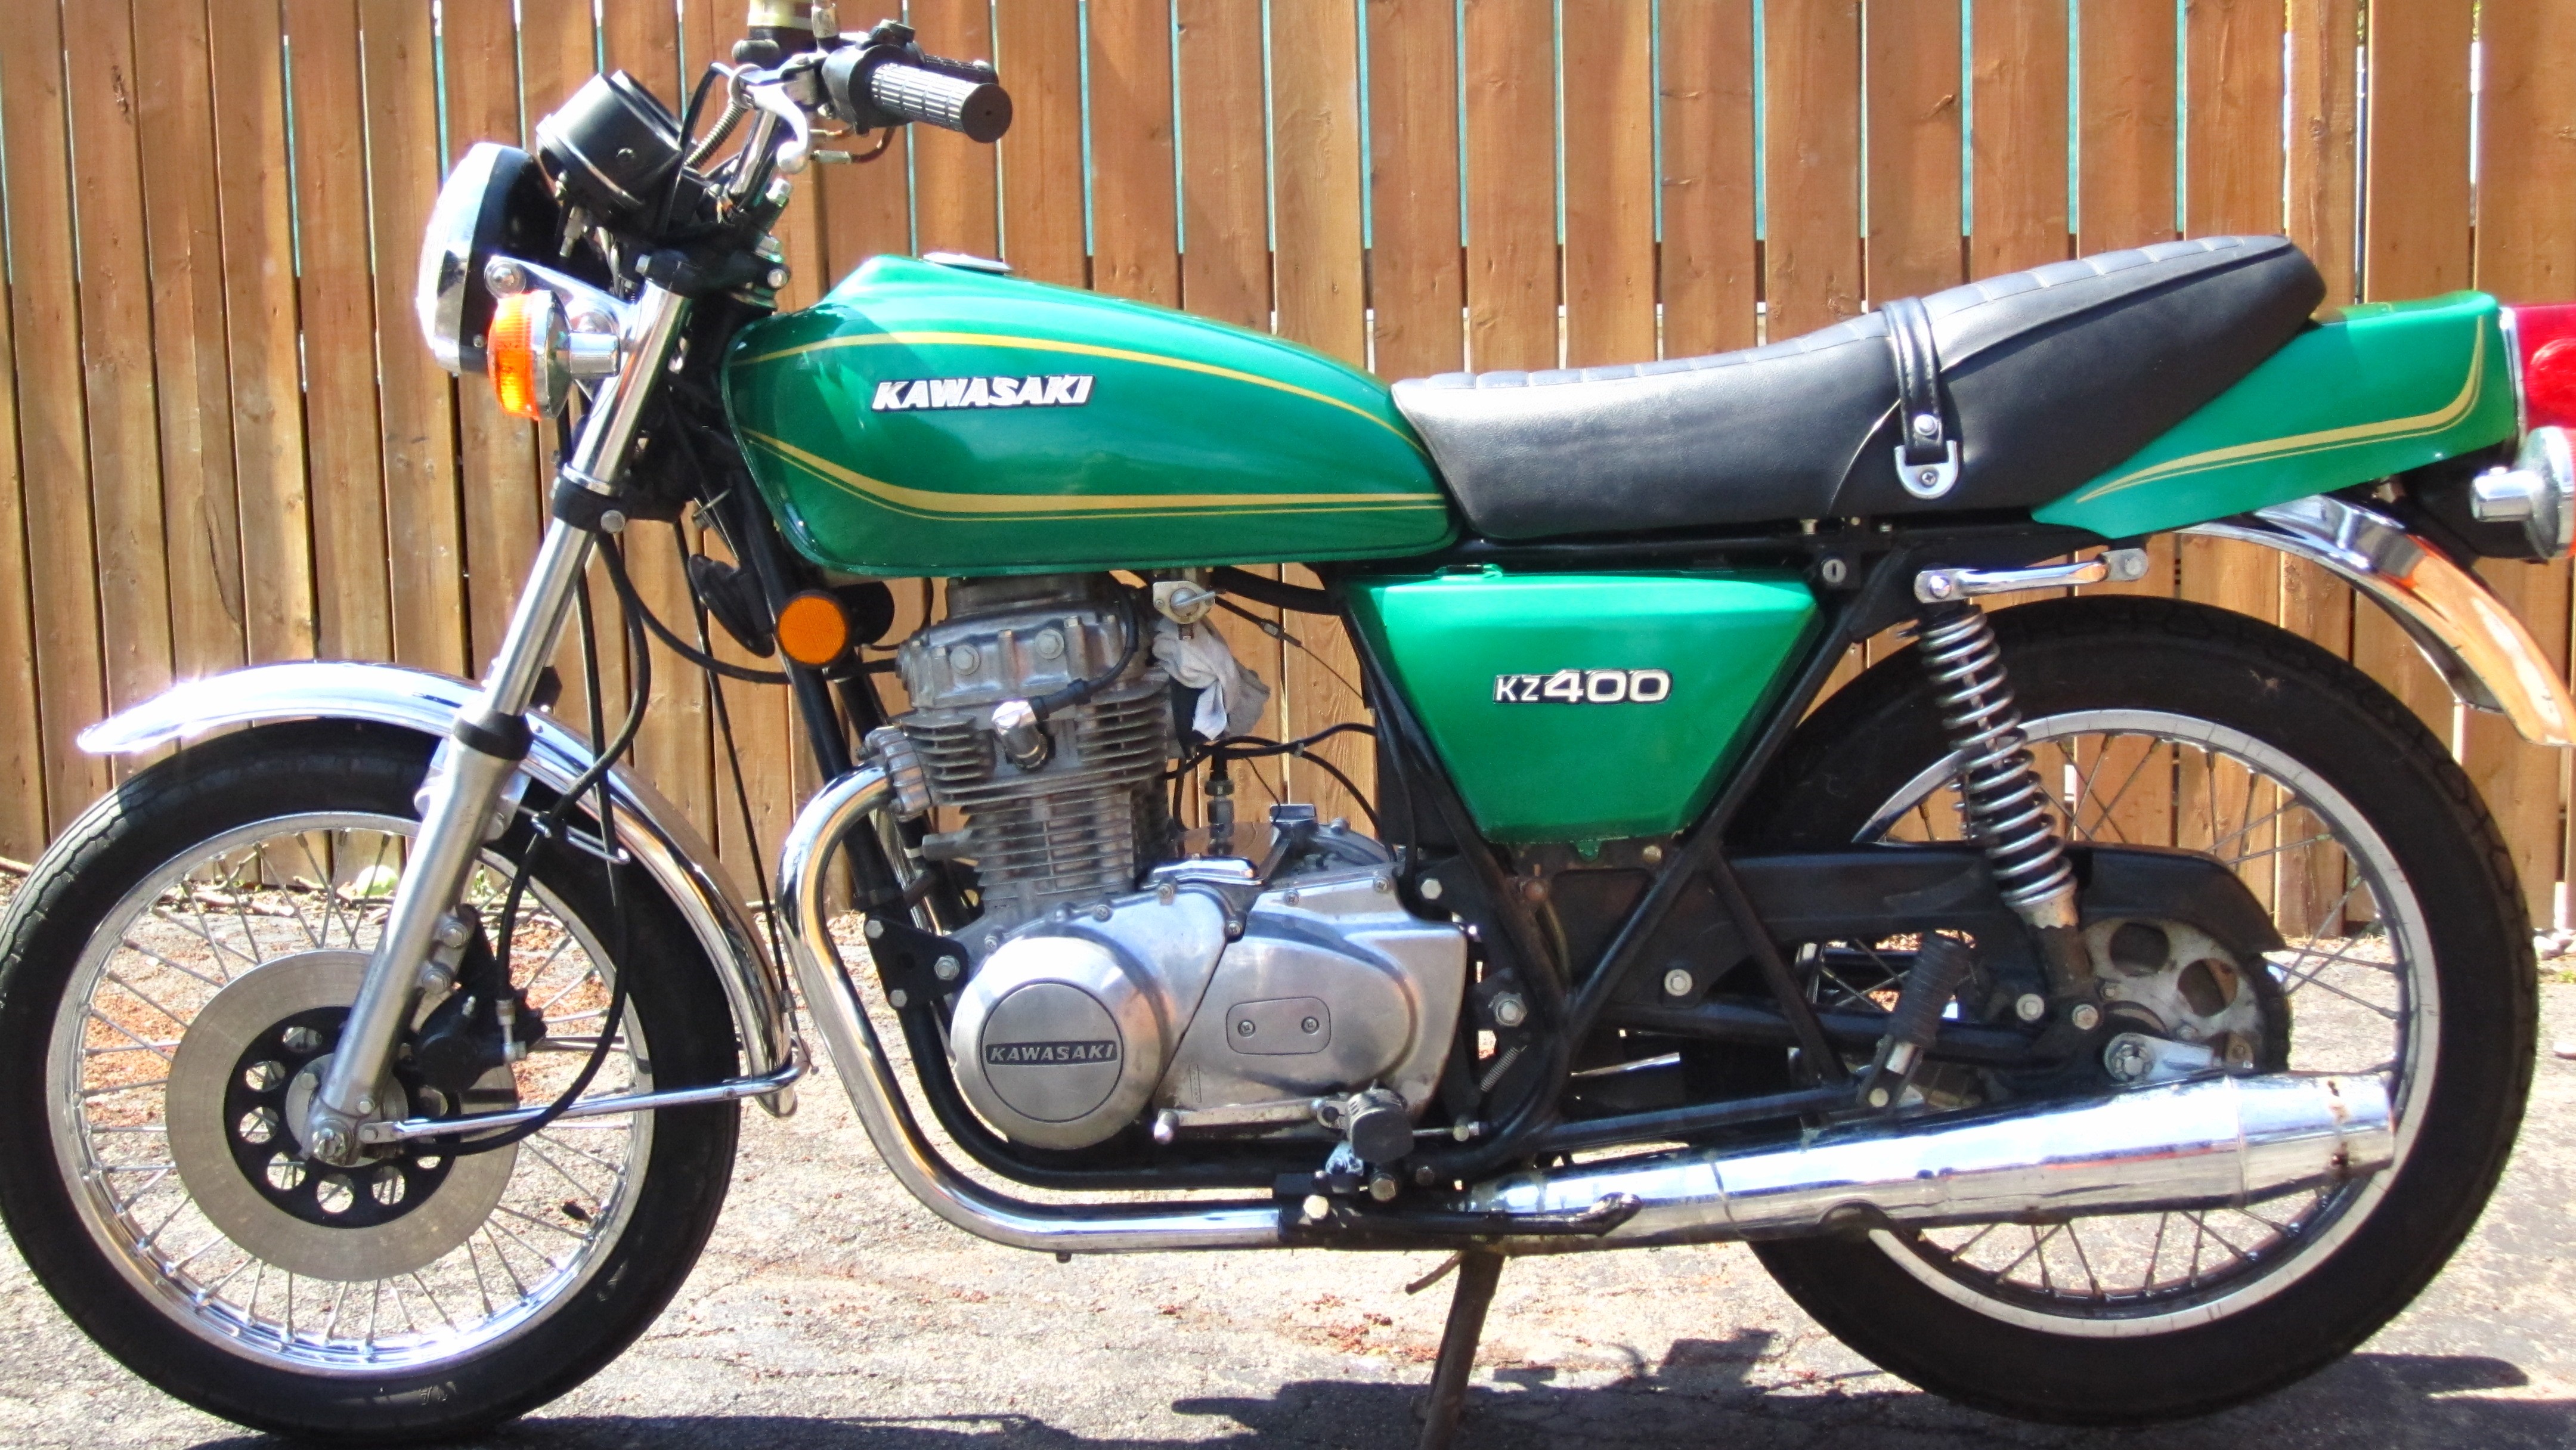 Kawasaki KZ400 #10